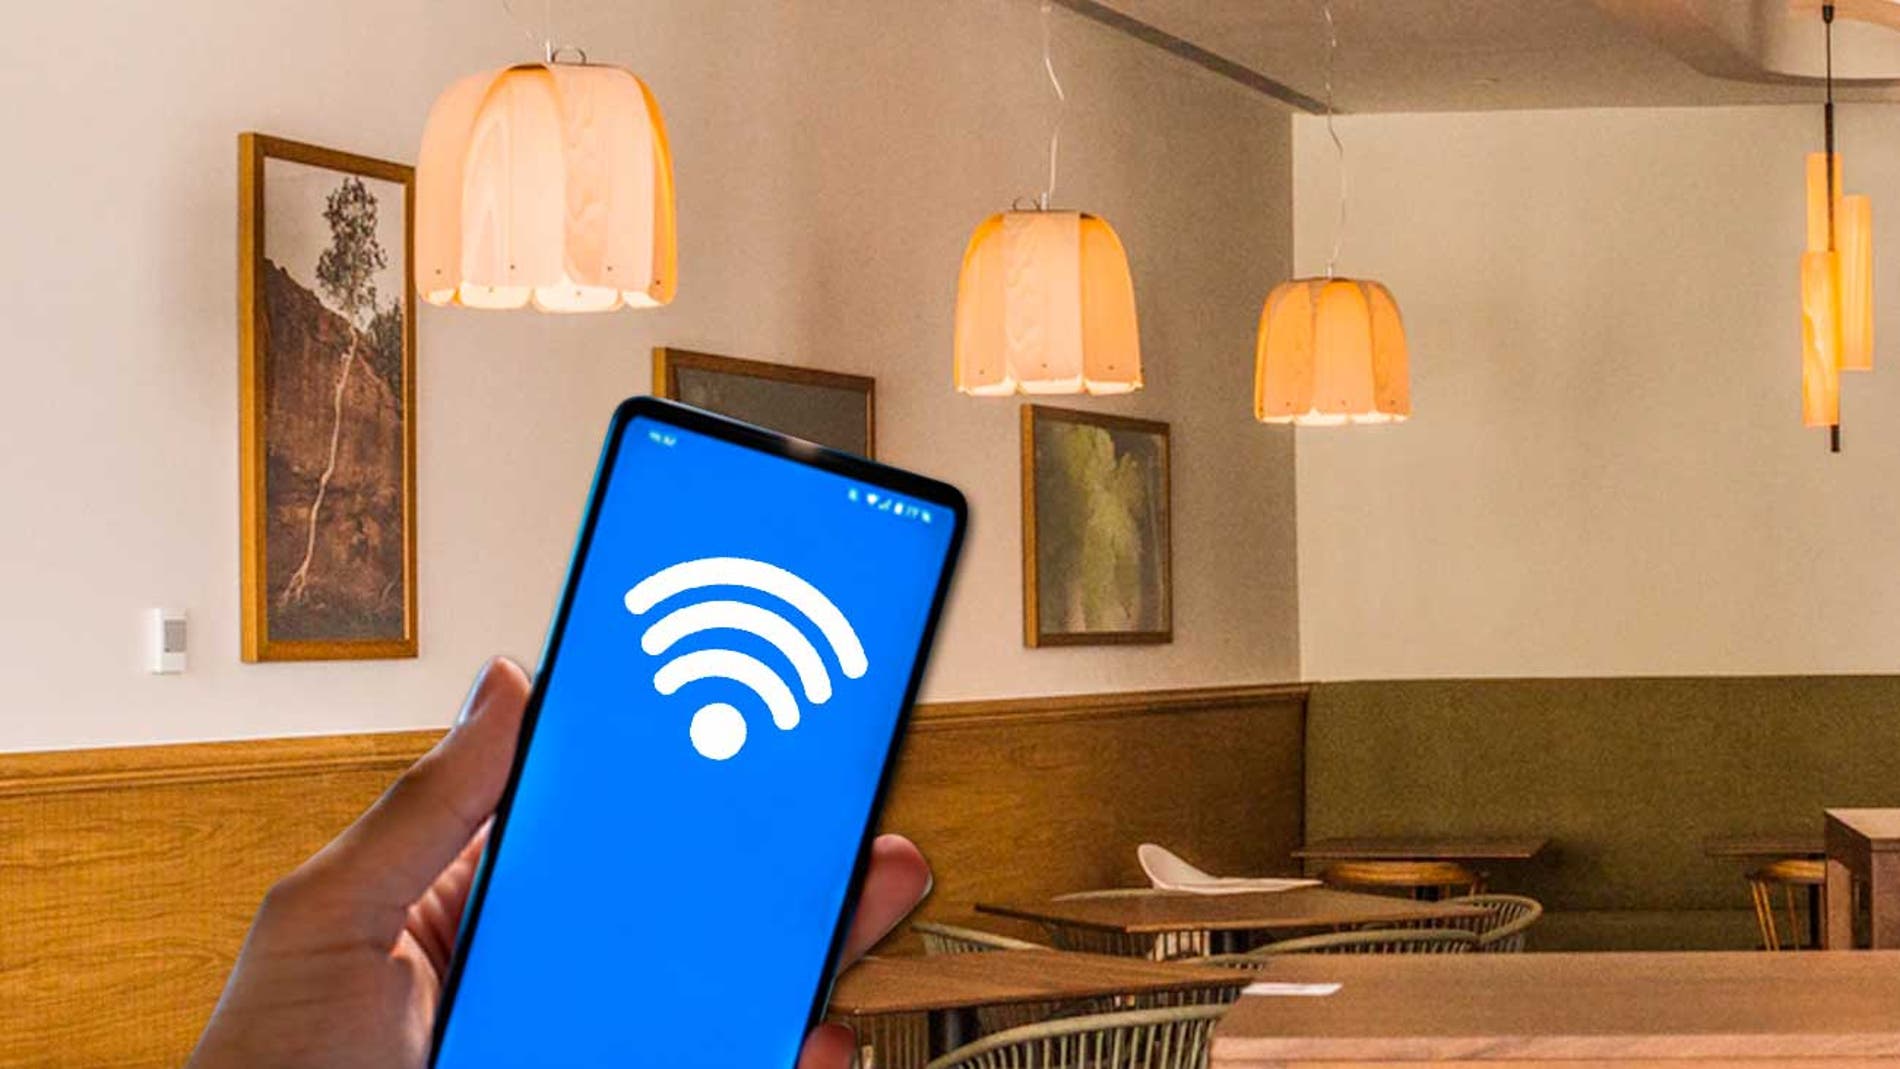 Controla las luces con estos casquillos Wifi